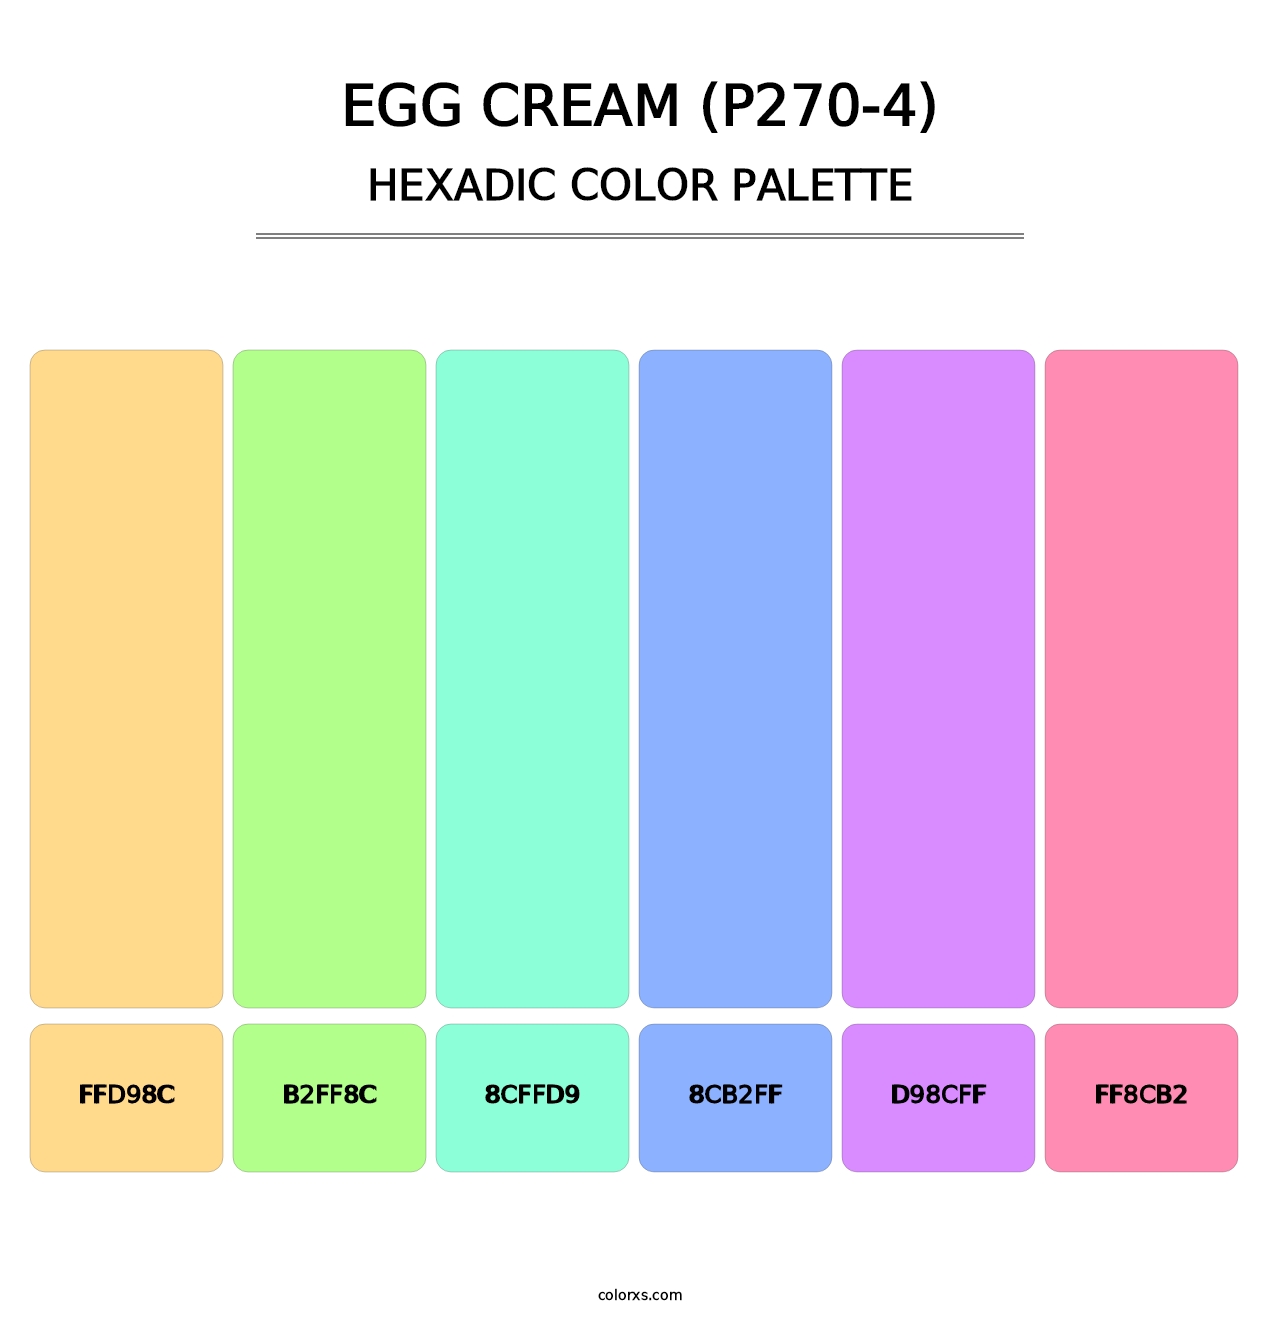 Egg Cream (P270-4) - Hexadic Color Palette